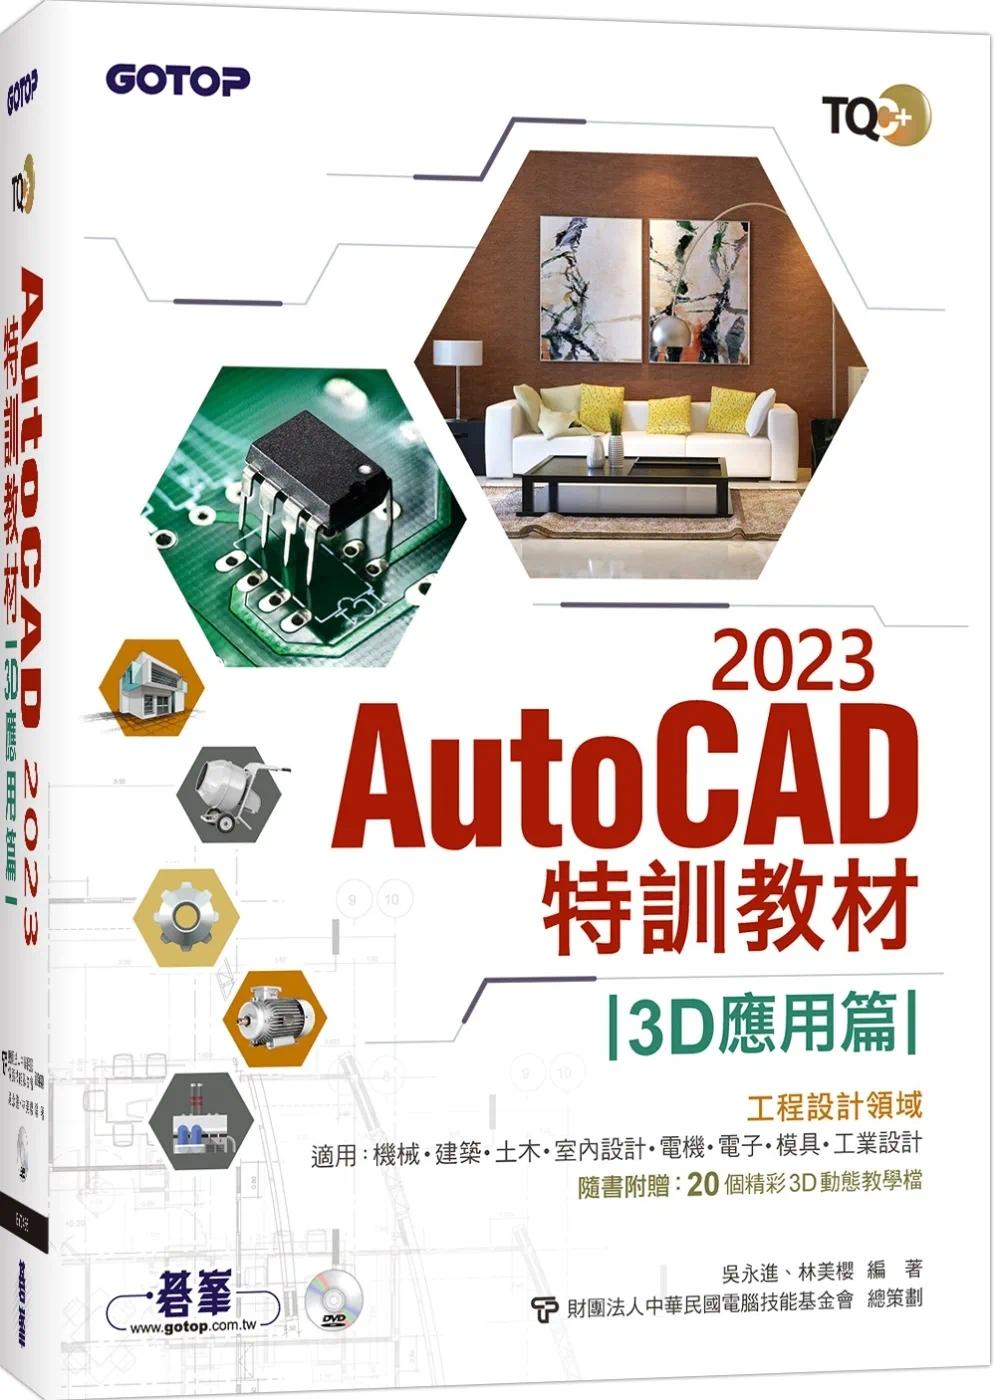 现货吴永进TQC+ AutoCAD 2023特训教程-3D应用篇(随书附赠20个精彩3D动态教学档)碁峰